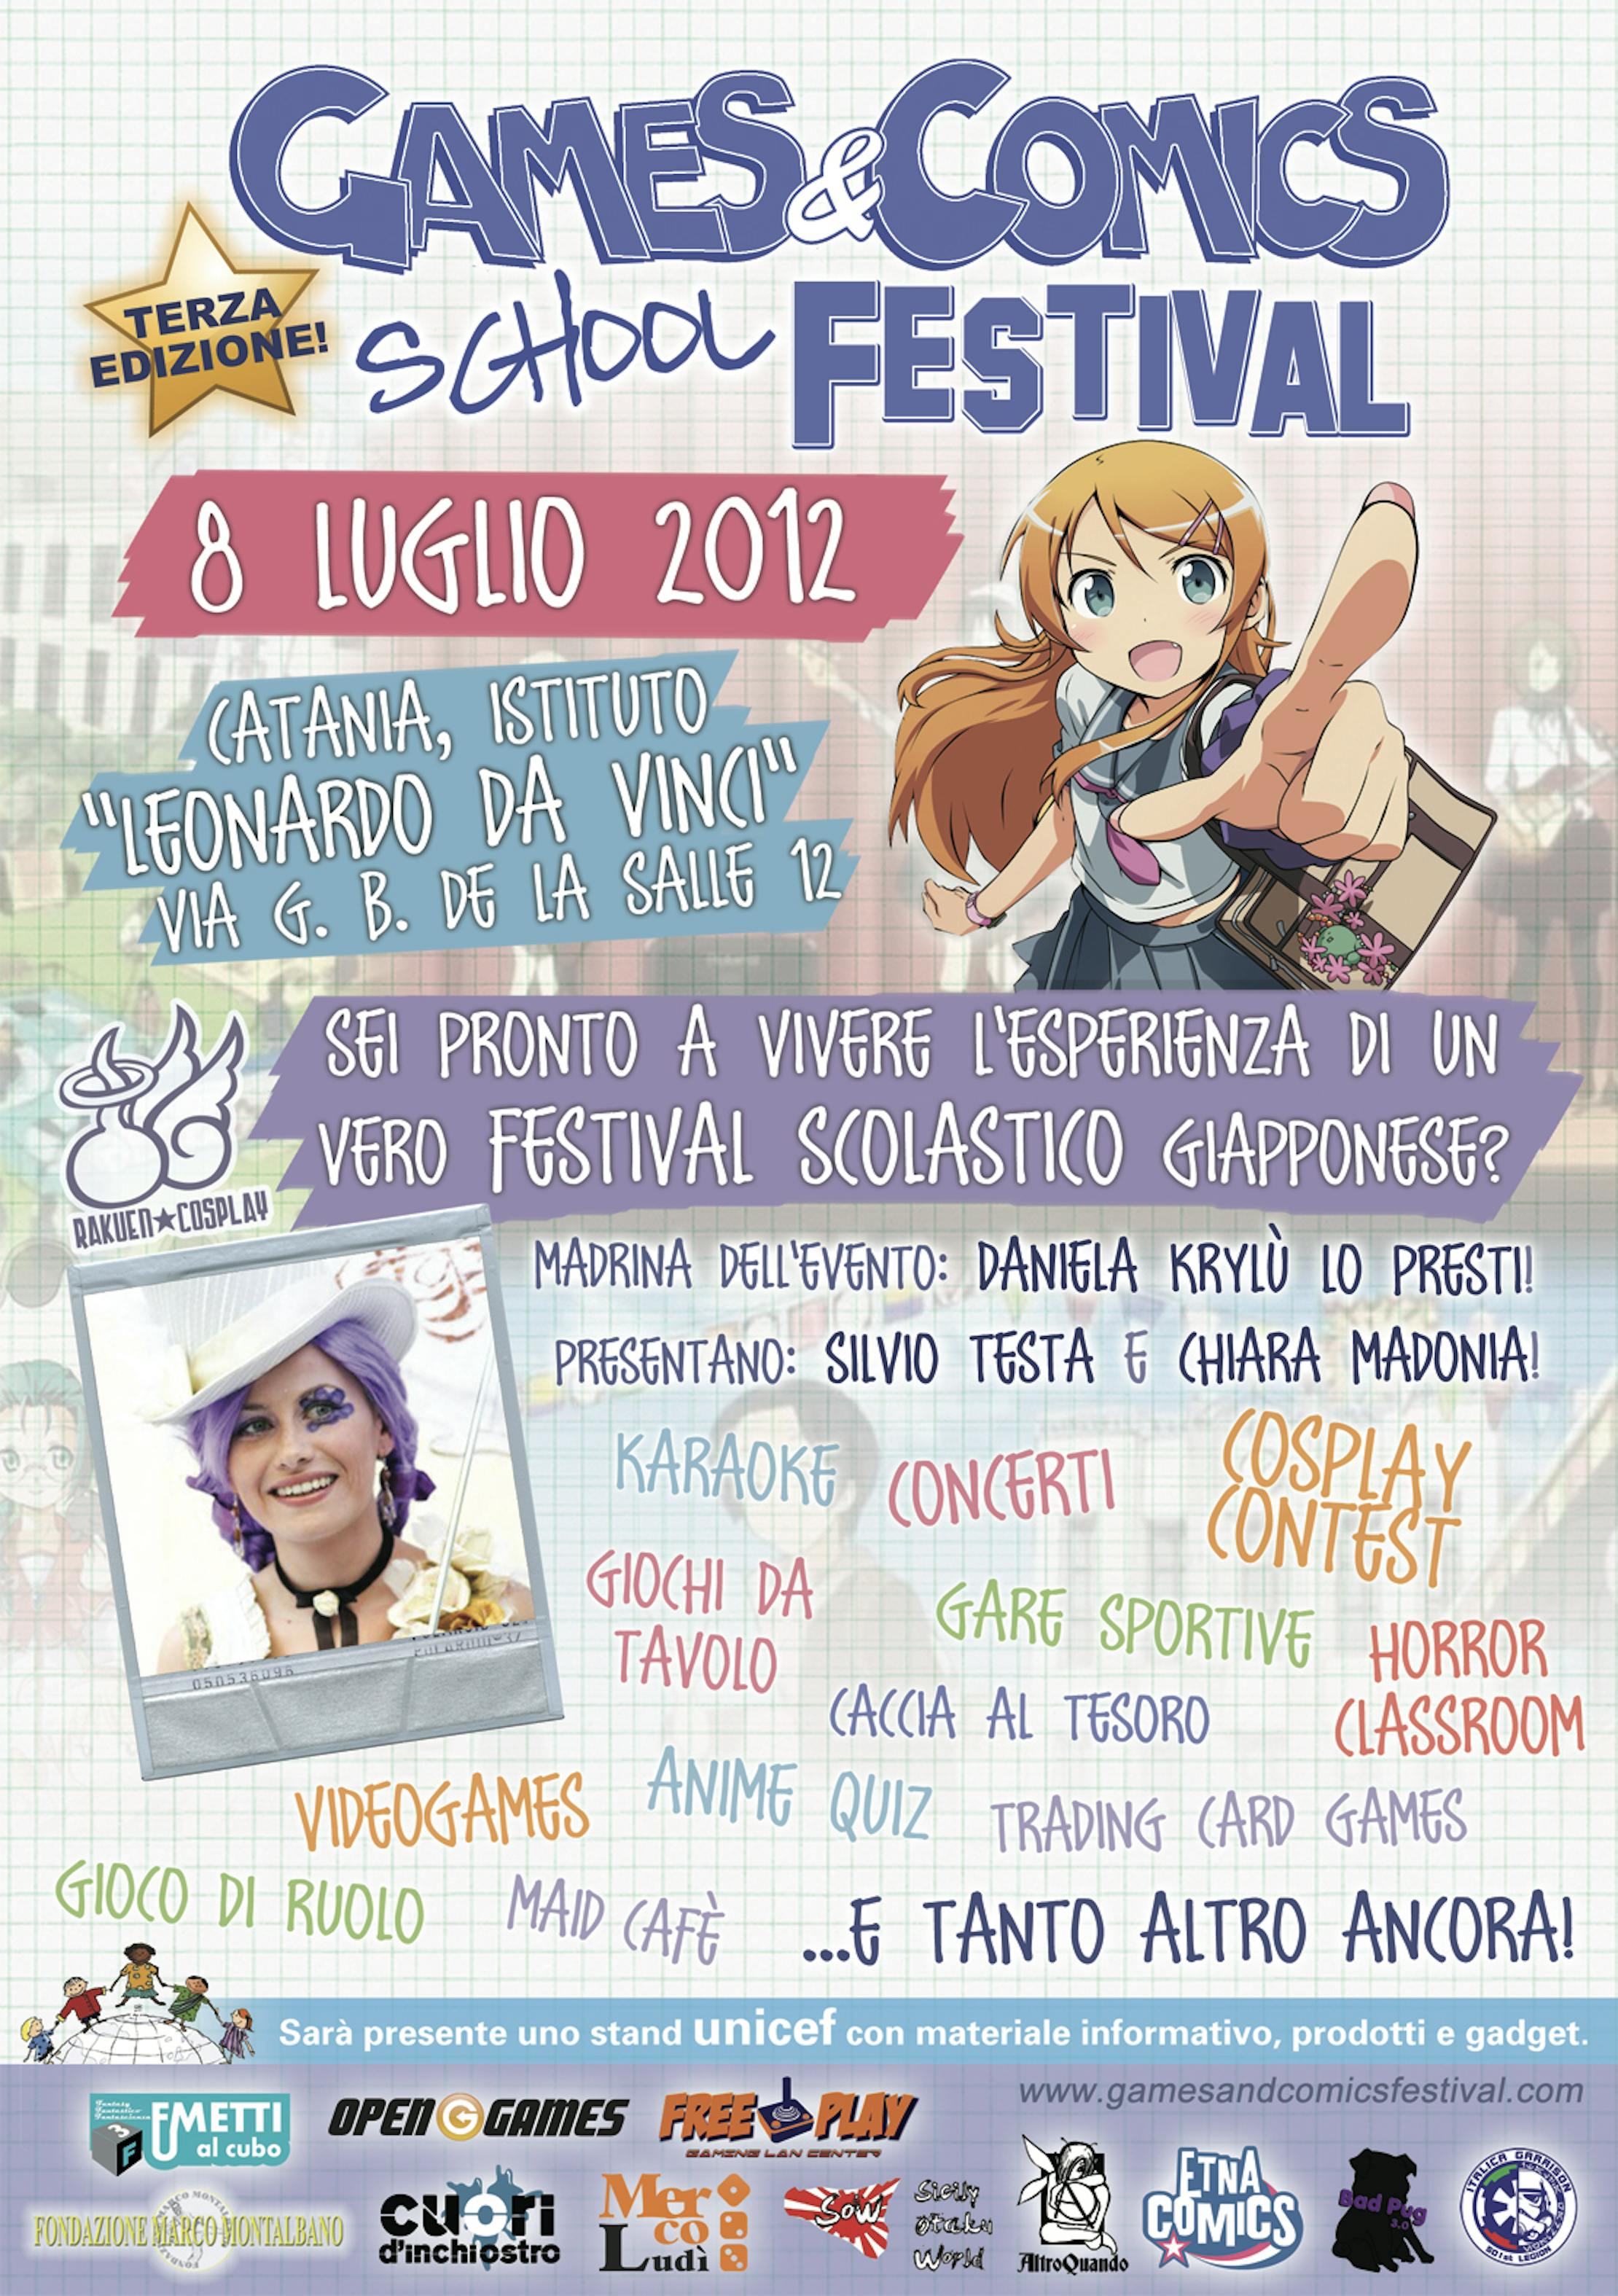 A Catania la terza edizione del Games&Comics School Festival